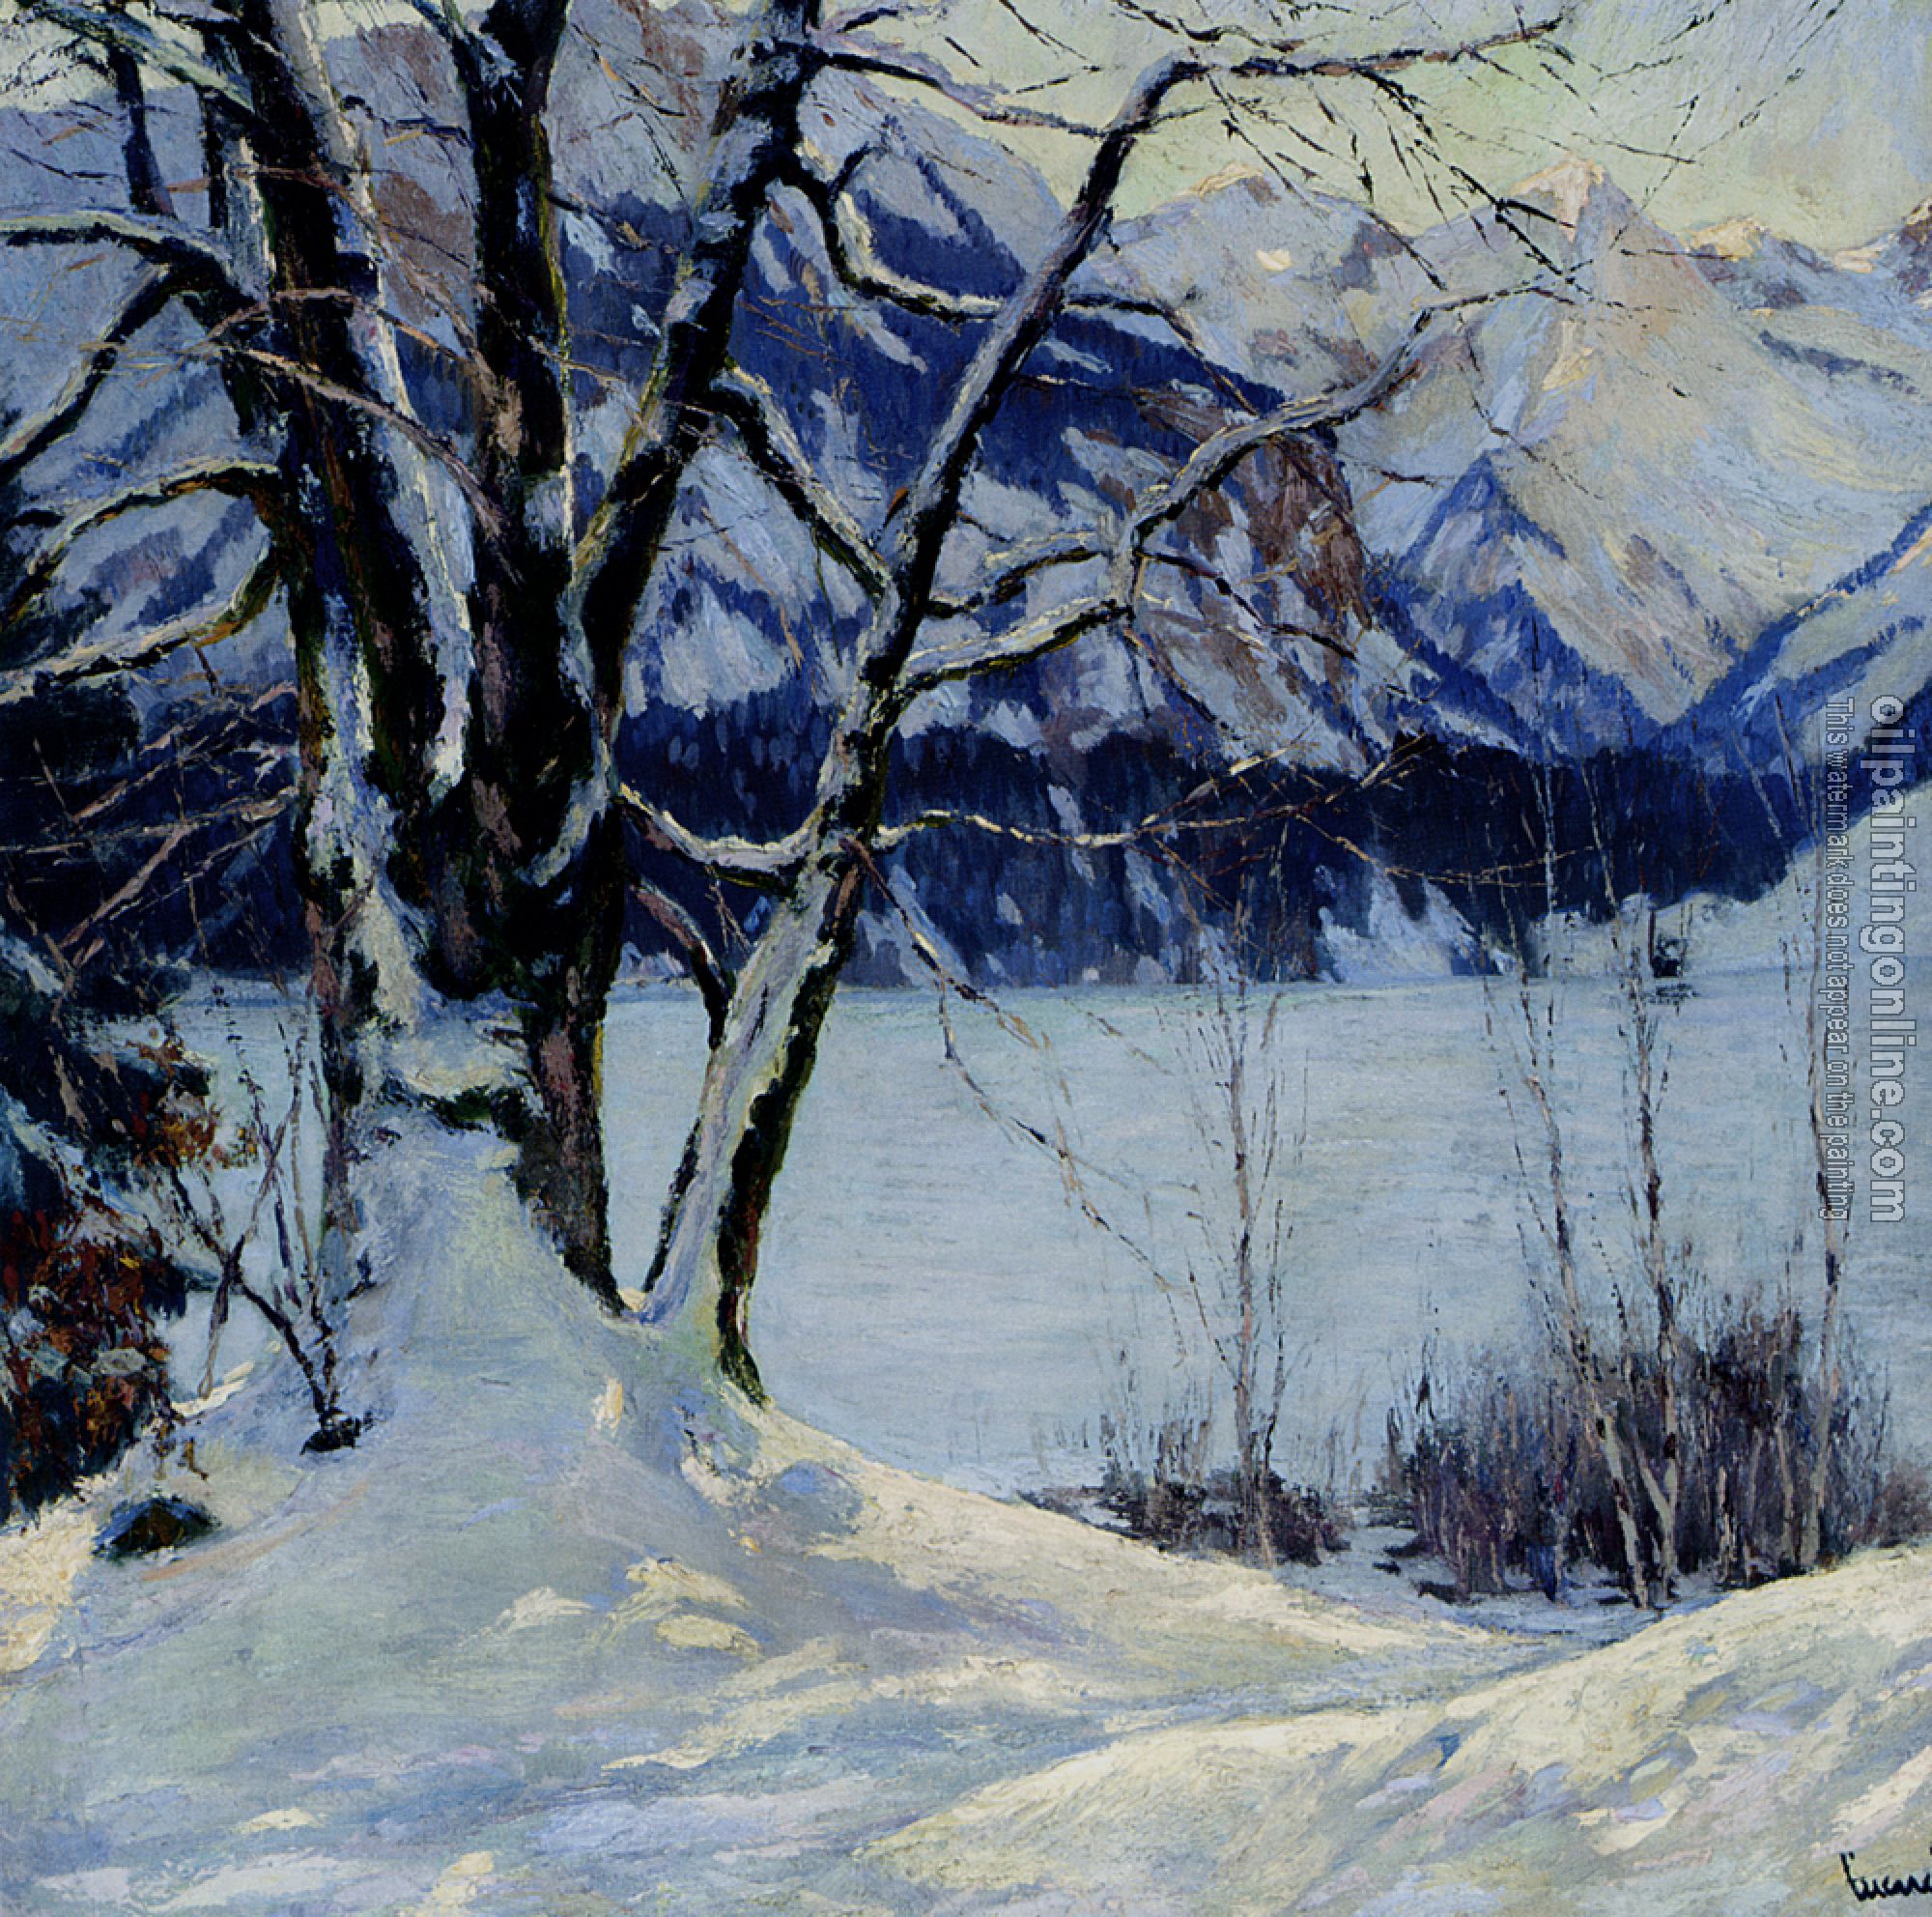 Edward Cucuel - A Frozen Lake In A Mountainous Winter Landscape